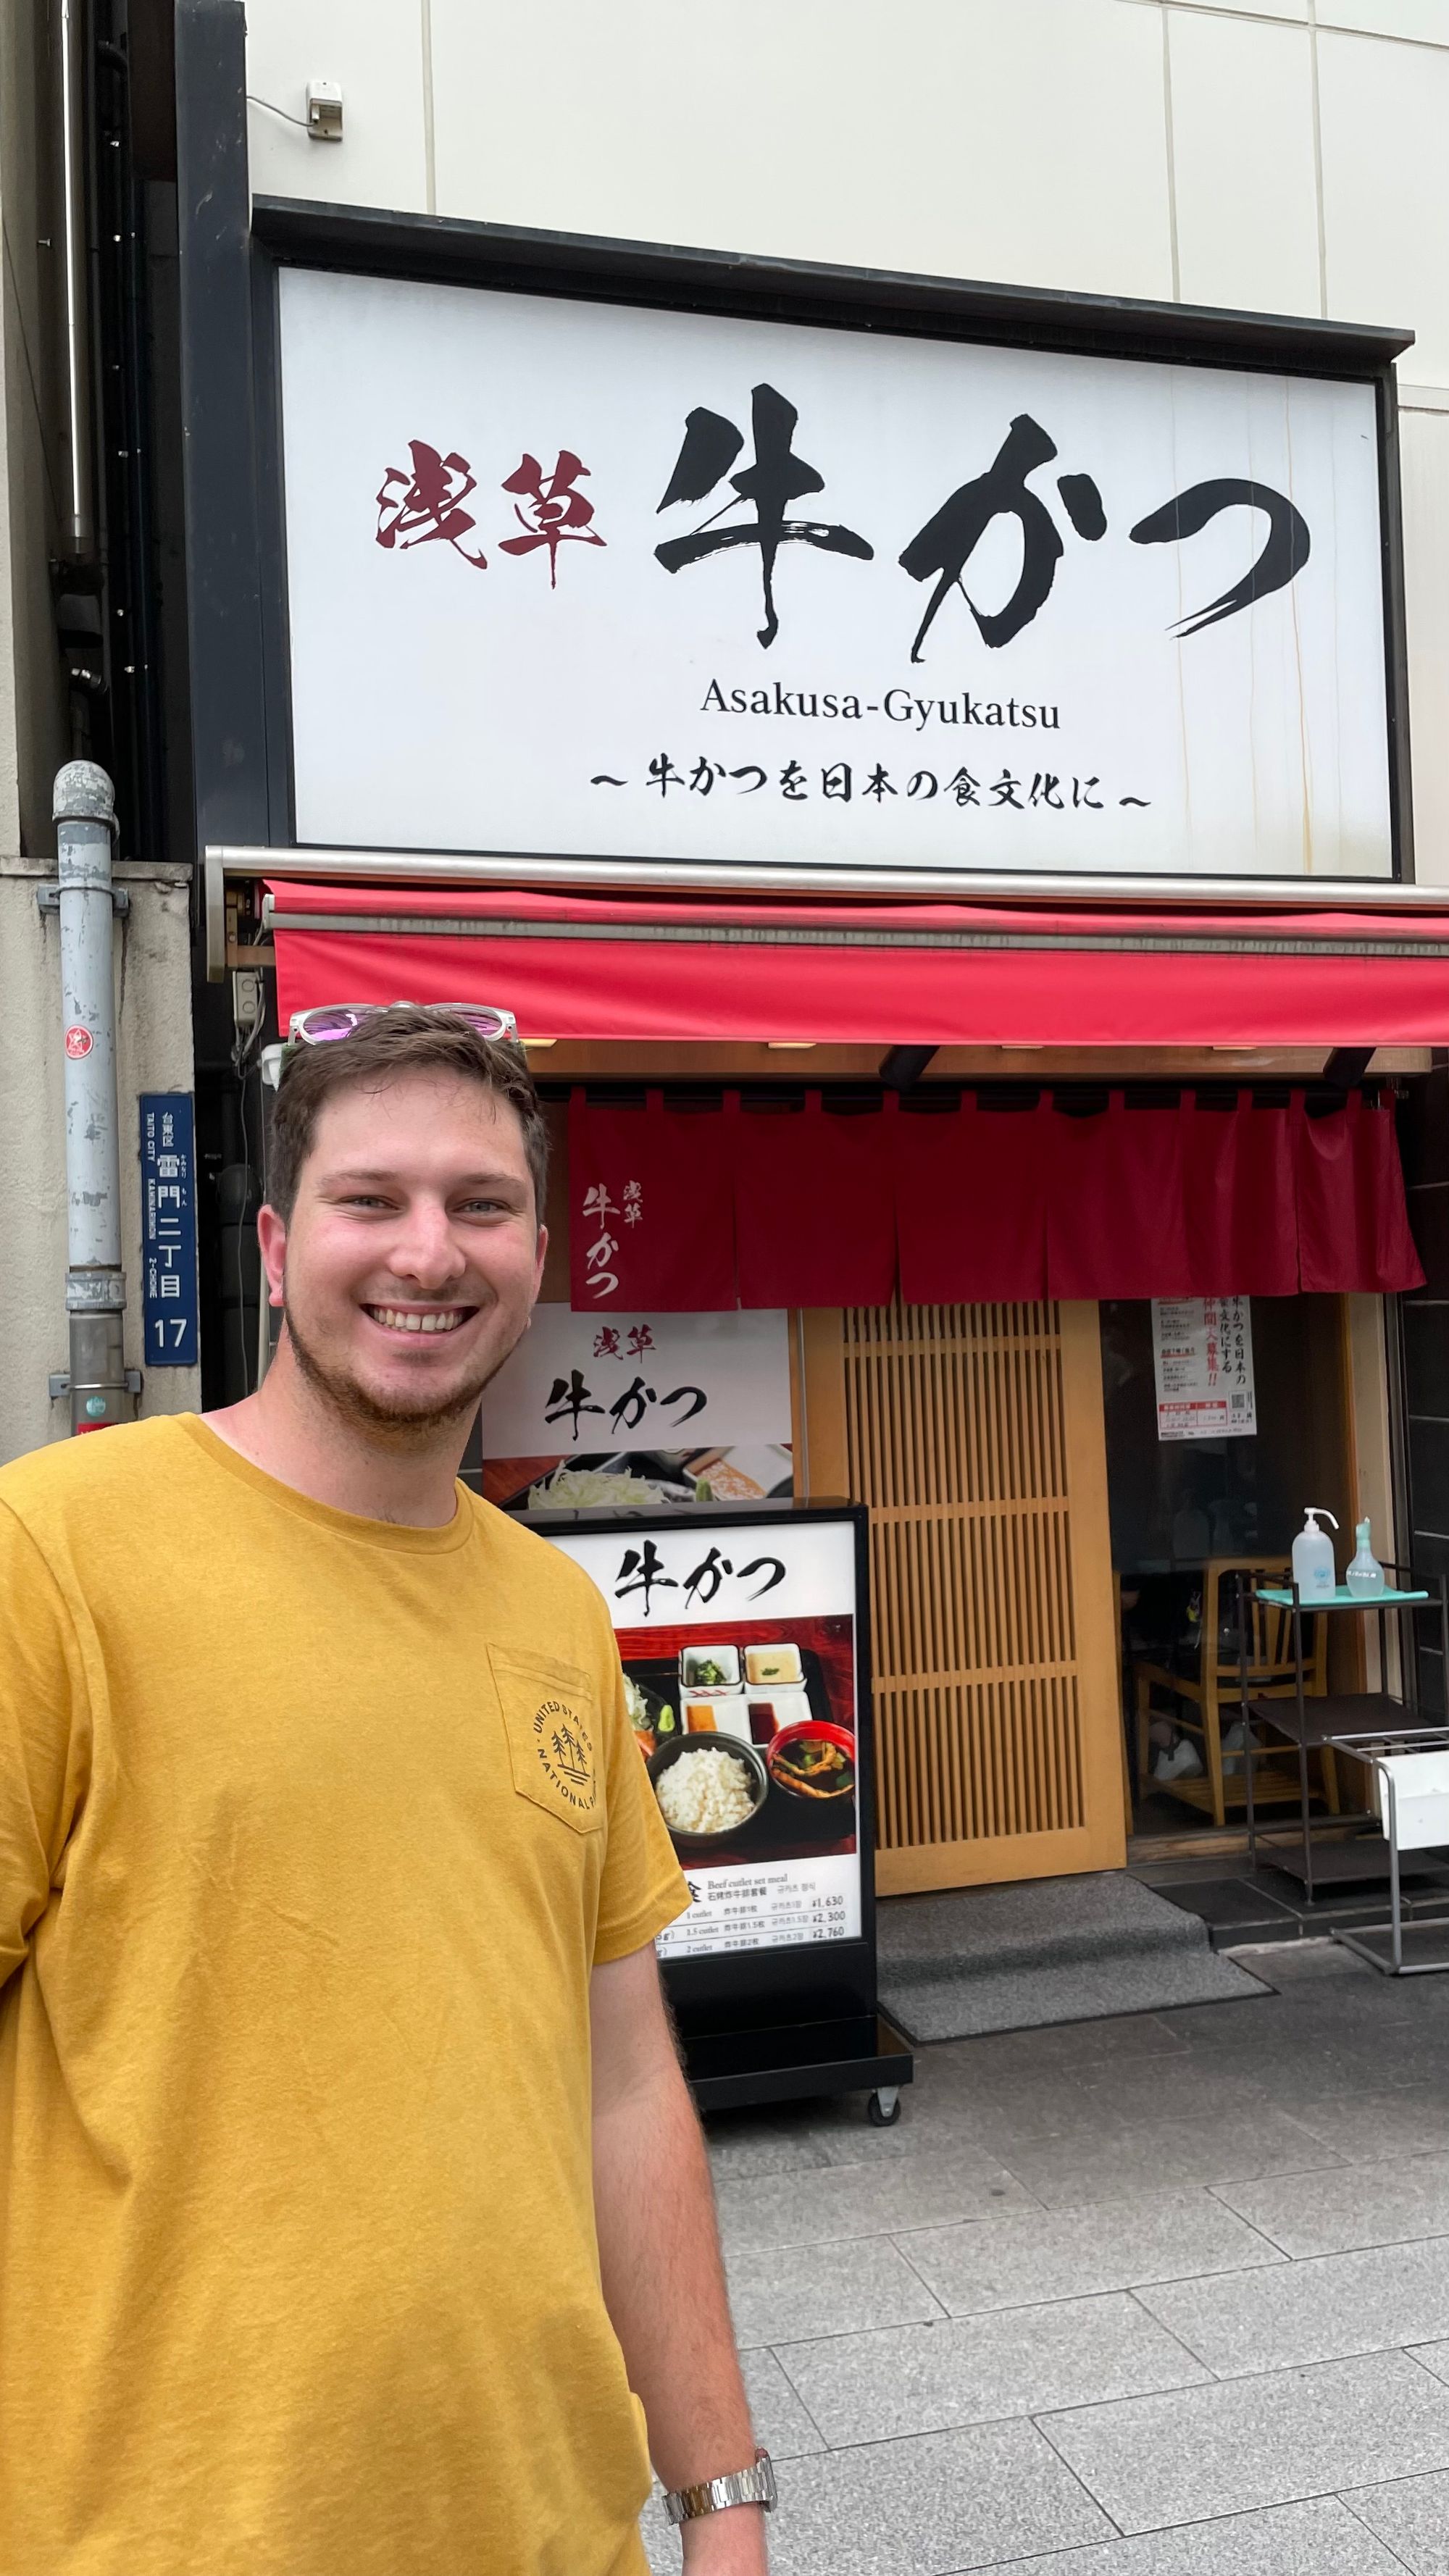 Brad In Japan: Sam In Japan